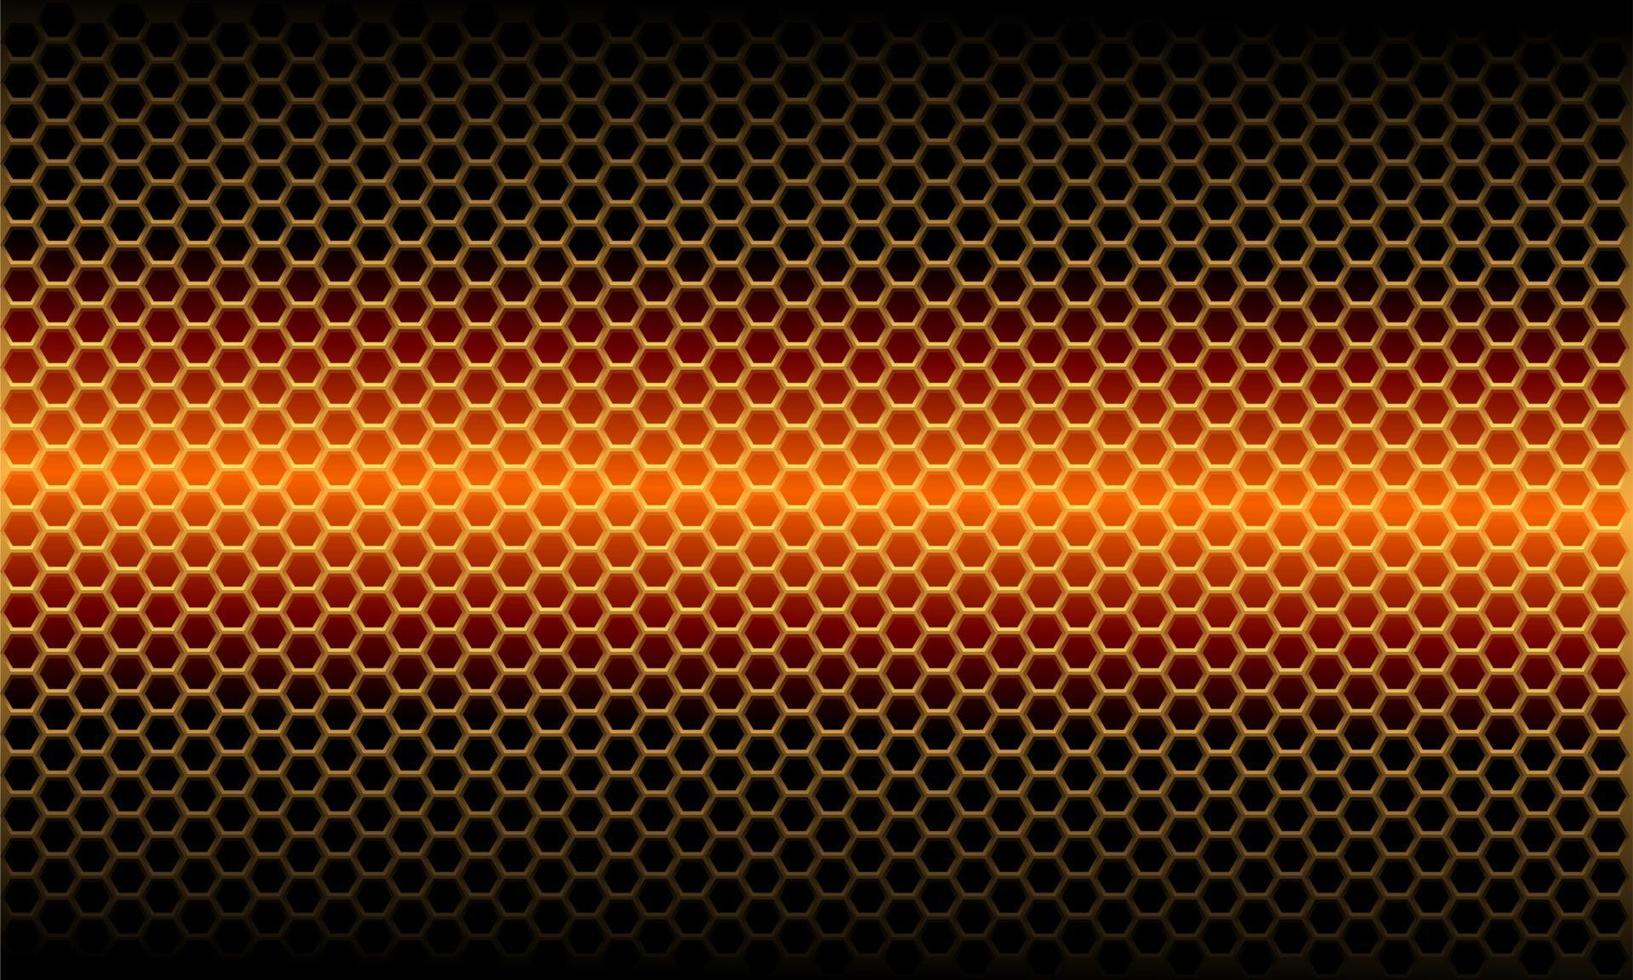 padrão de malha de hexágono metálico abstrato luz laranja na ilustração em vetor fundo futurista moderno design preto.